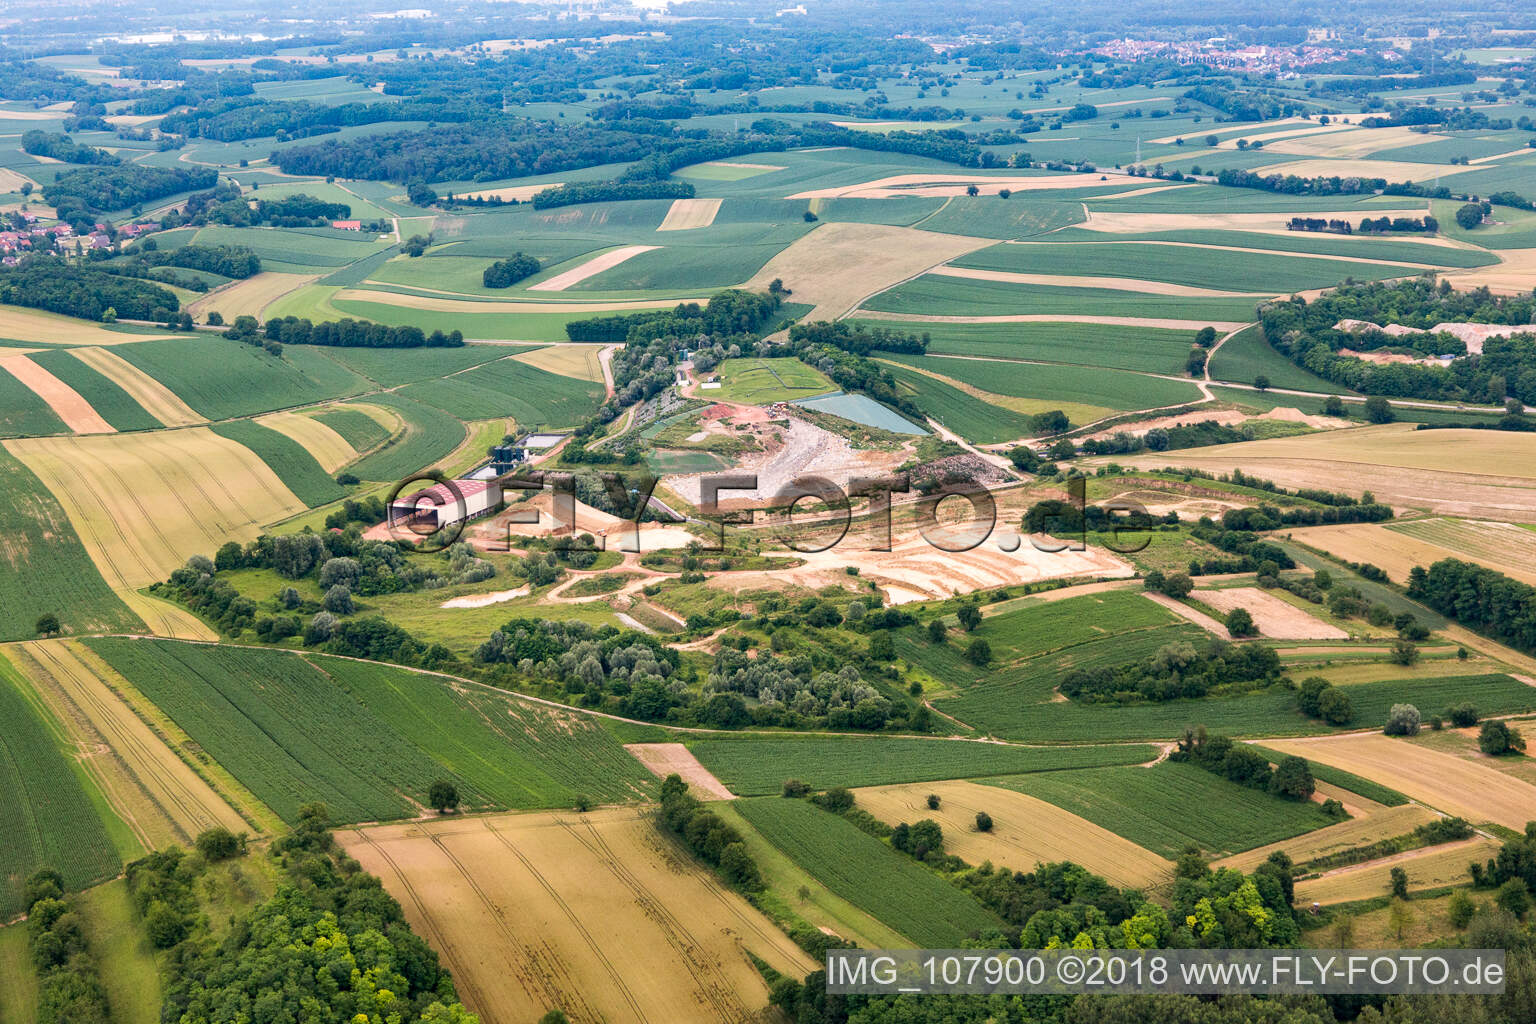 Vue aérienne de Décharge à Schaffhouse-près-Seltz dans le département Bas Rhin, France